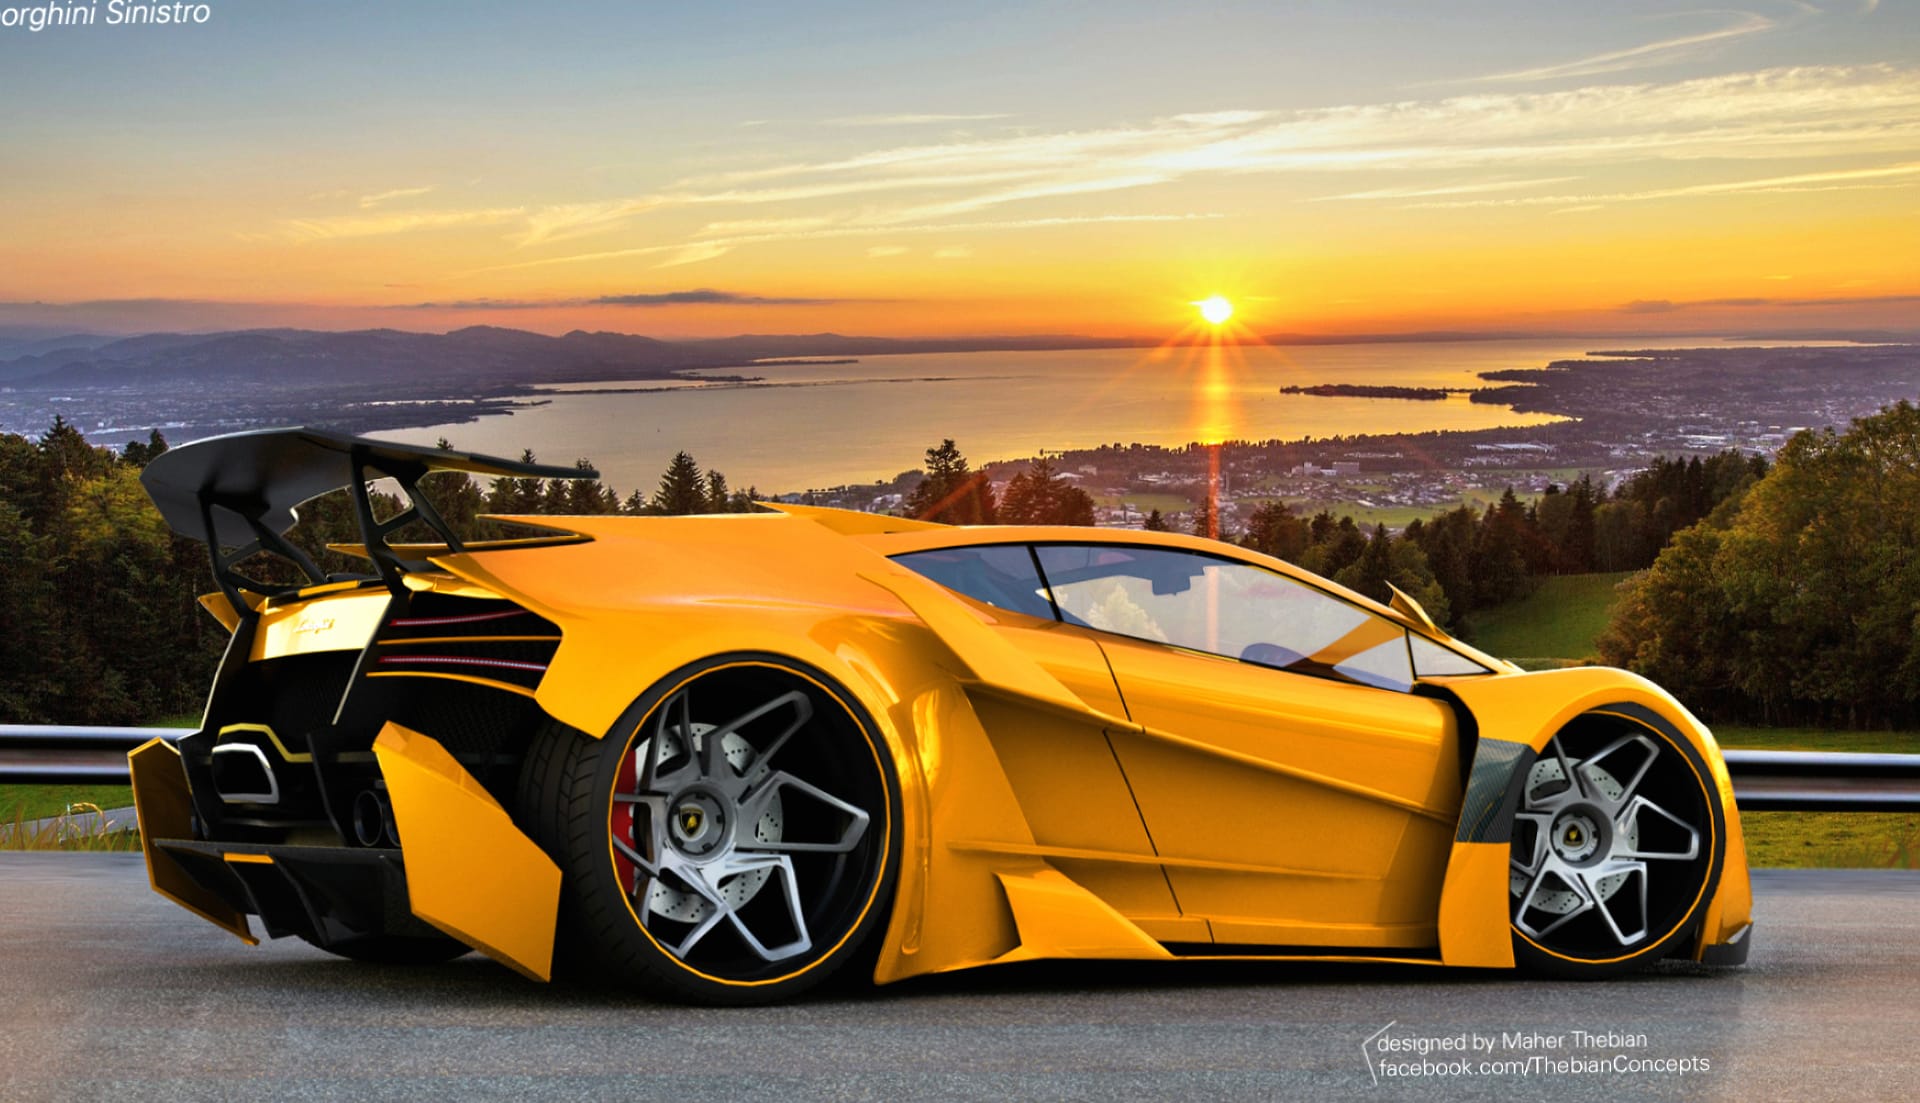 Lamborghini Sinistro Concept wallpapers HD quality